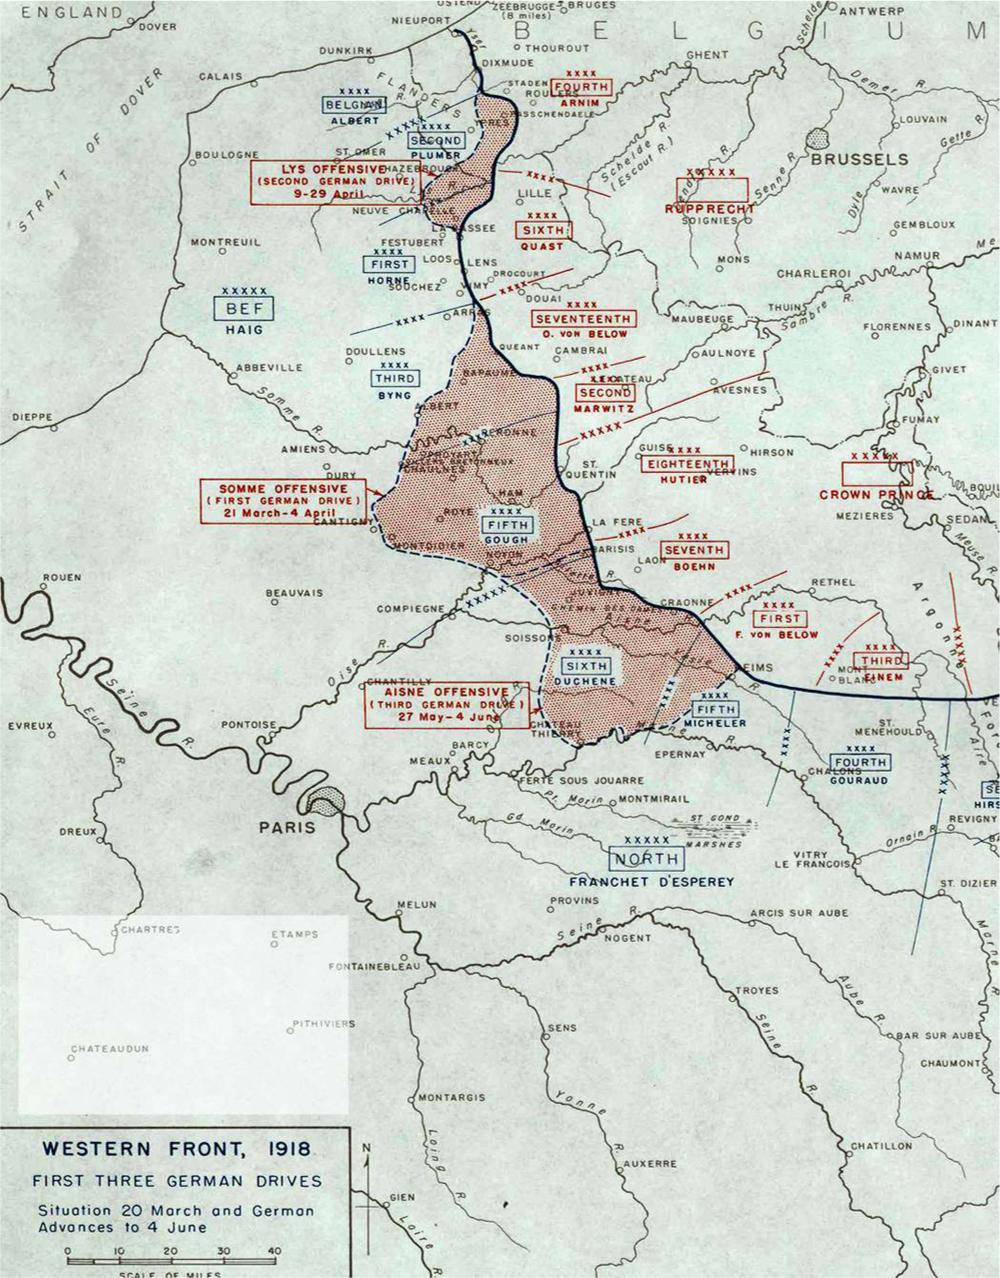 Het Duitse voorjaarsoffensief bestaat uit meerdere operaties. De aanval wordt ingezet tussen Arras en La Fère (operatie Michael). Daarna verplaatst hij zich in april naar de Frans-Belgische grens en de Leie (operatie Georgette). Een derde aanval doet zich voor tussen Reims en Soissons (operatie Blücher-Yorck).